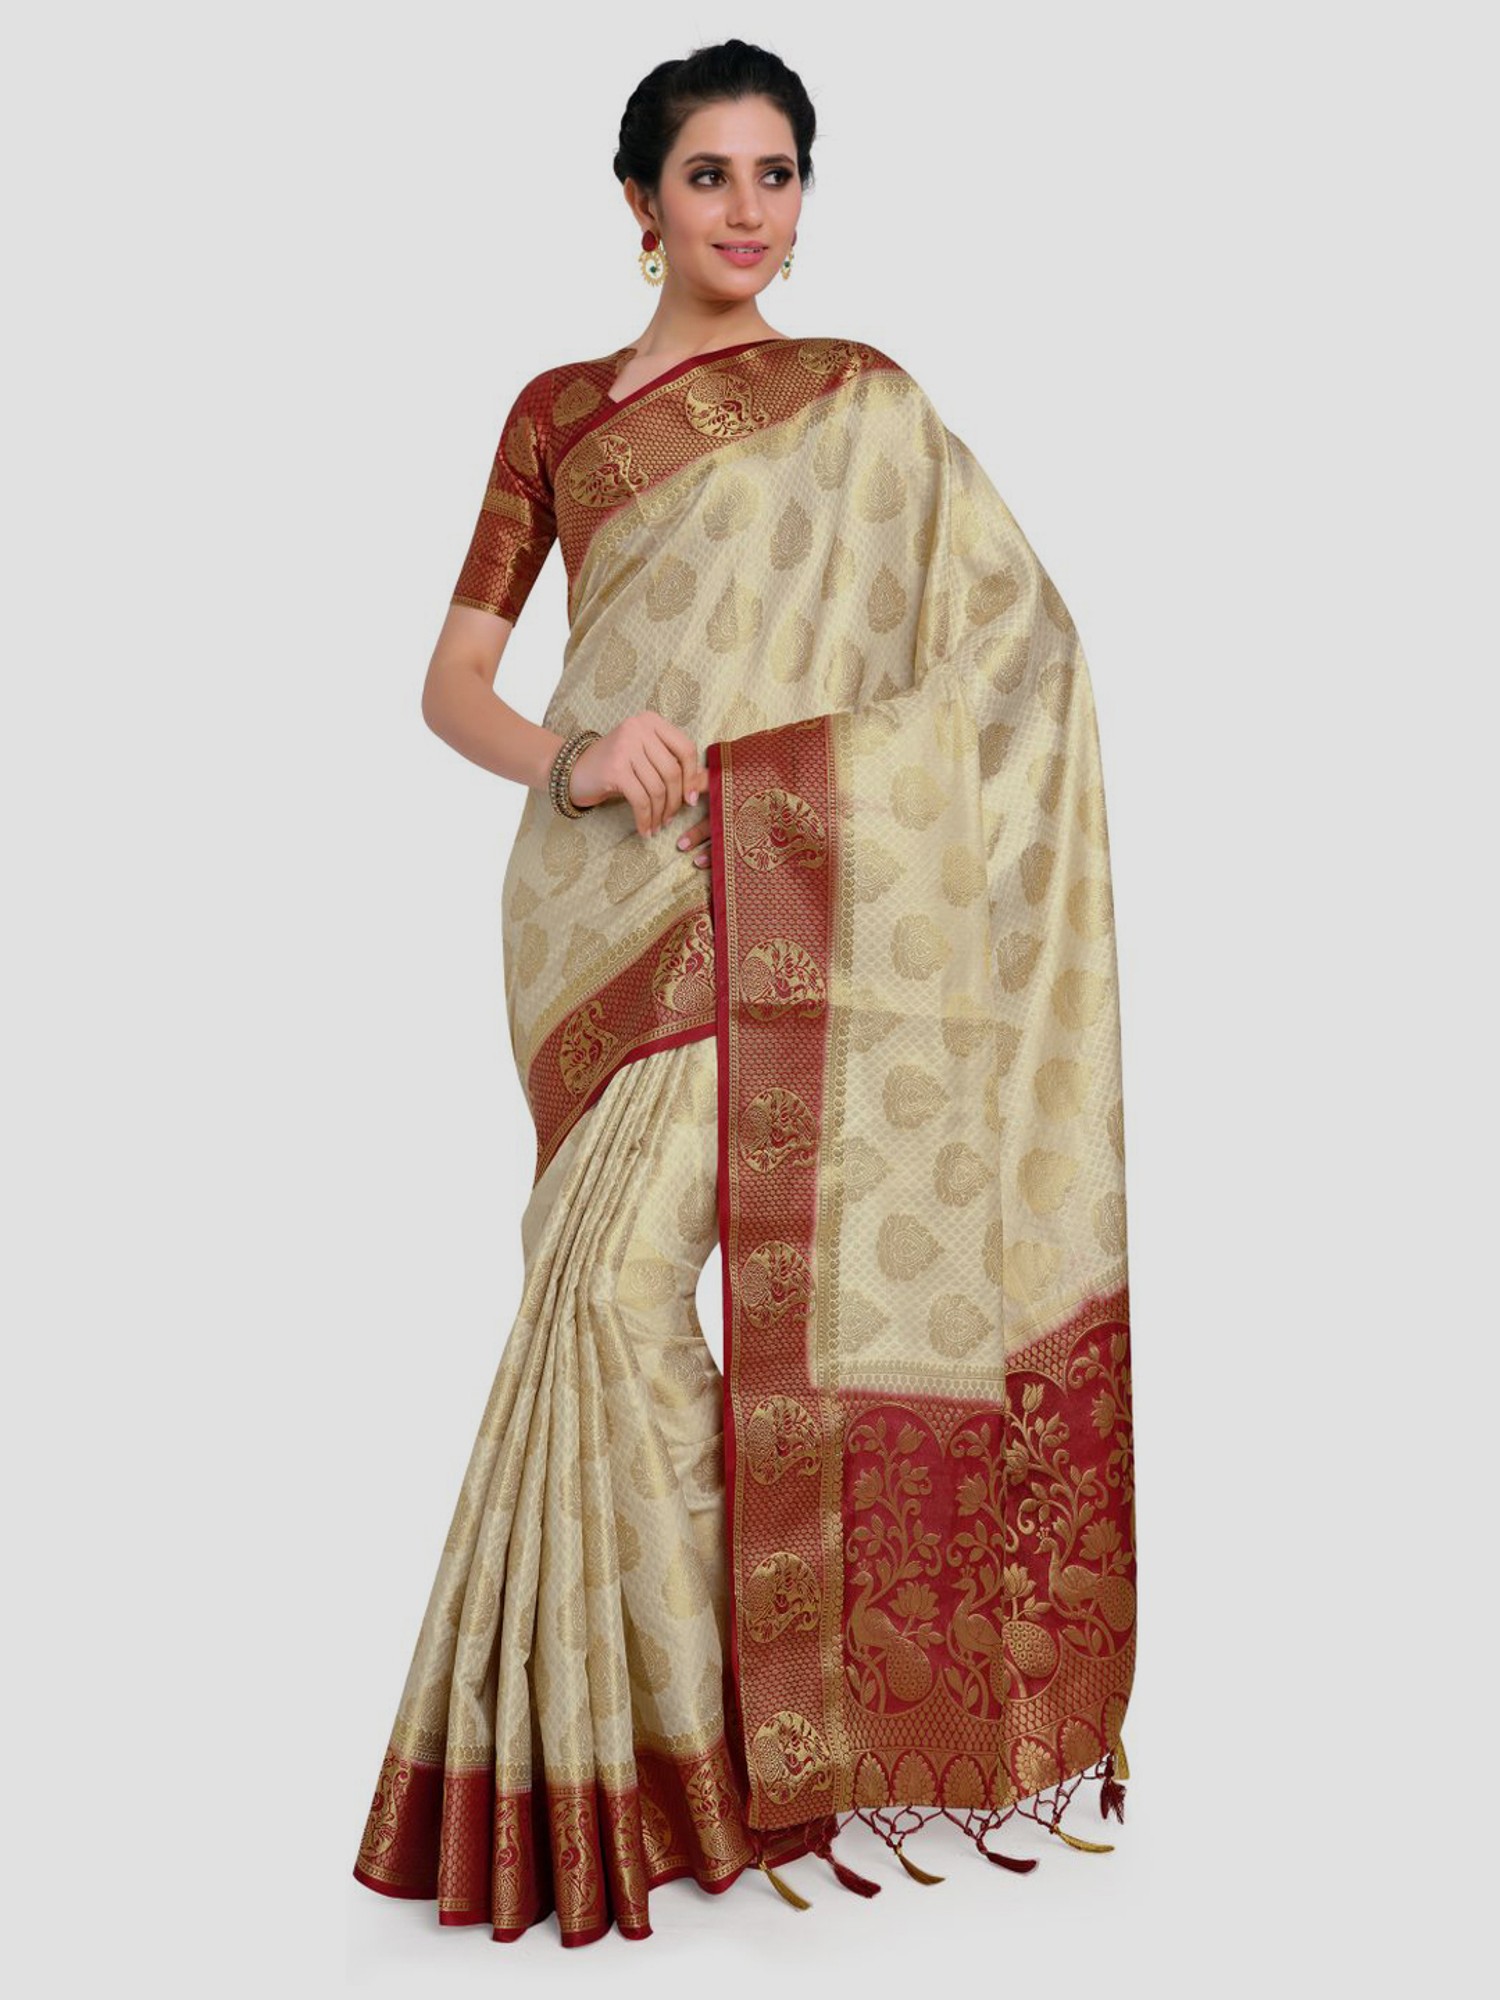 Chellur Silks in bellary - manufacturer Buy fancy silk saree for women  karnataka